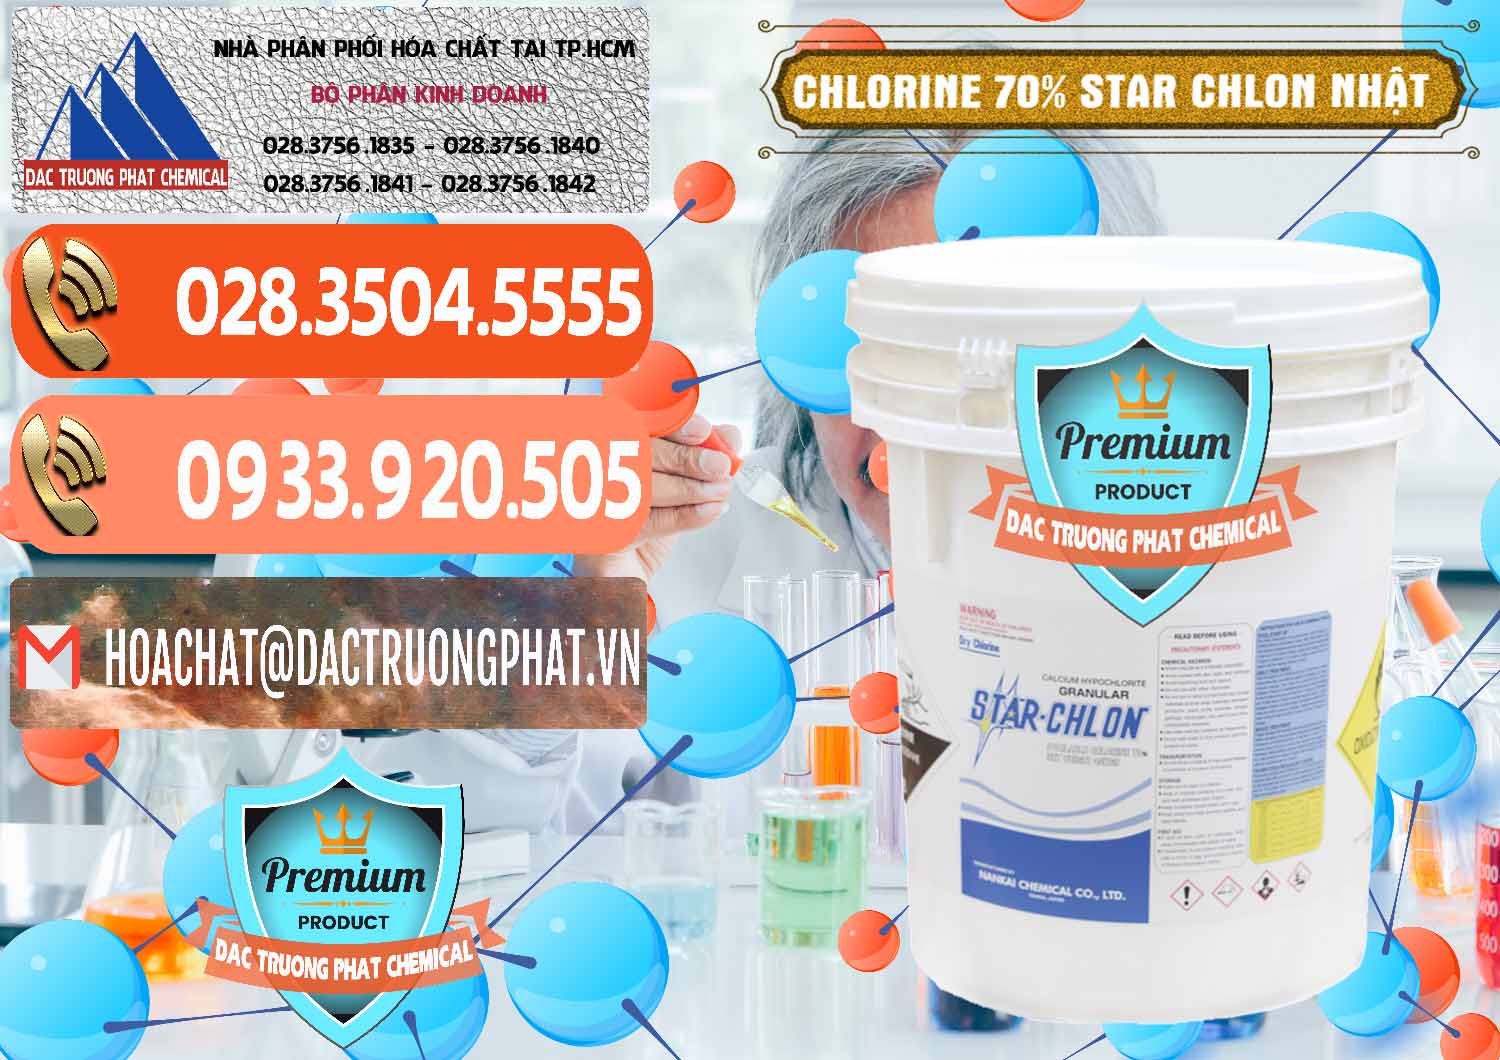 Nơi chuyên bán _ cung ứng Clorin – Chlorine 70% Star Chlon Nhật Bản Japan - 0243 - Nơi phân phối _ cung cấp hóa chất tại TP.HCM - hoachatmientay.com